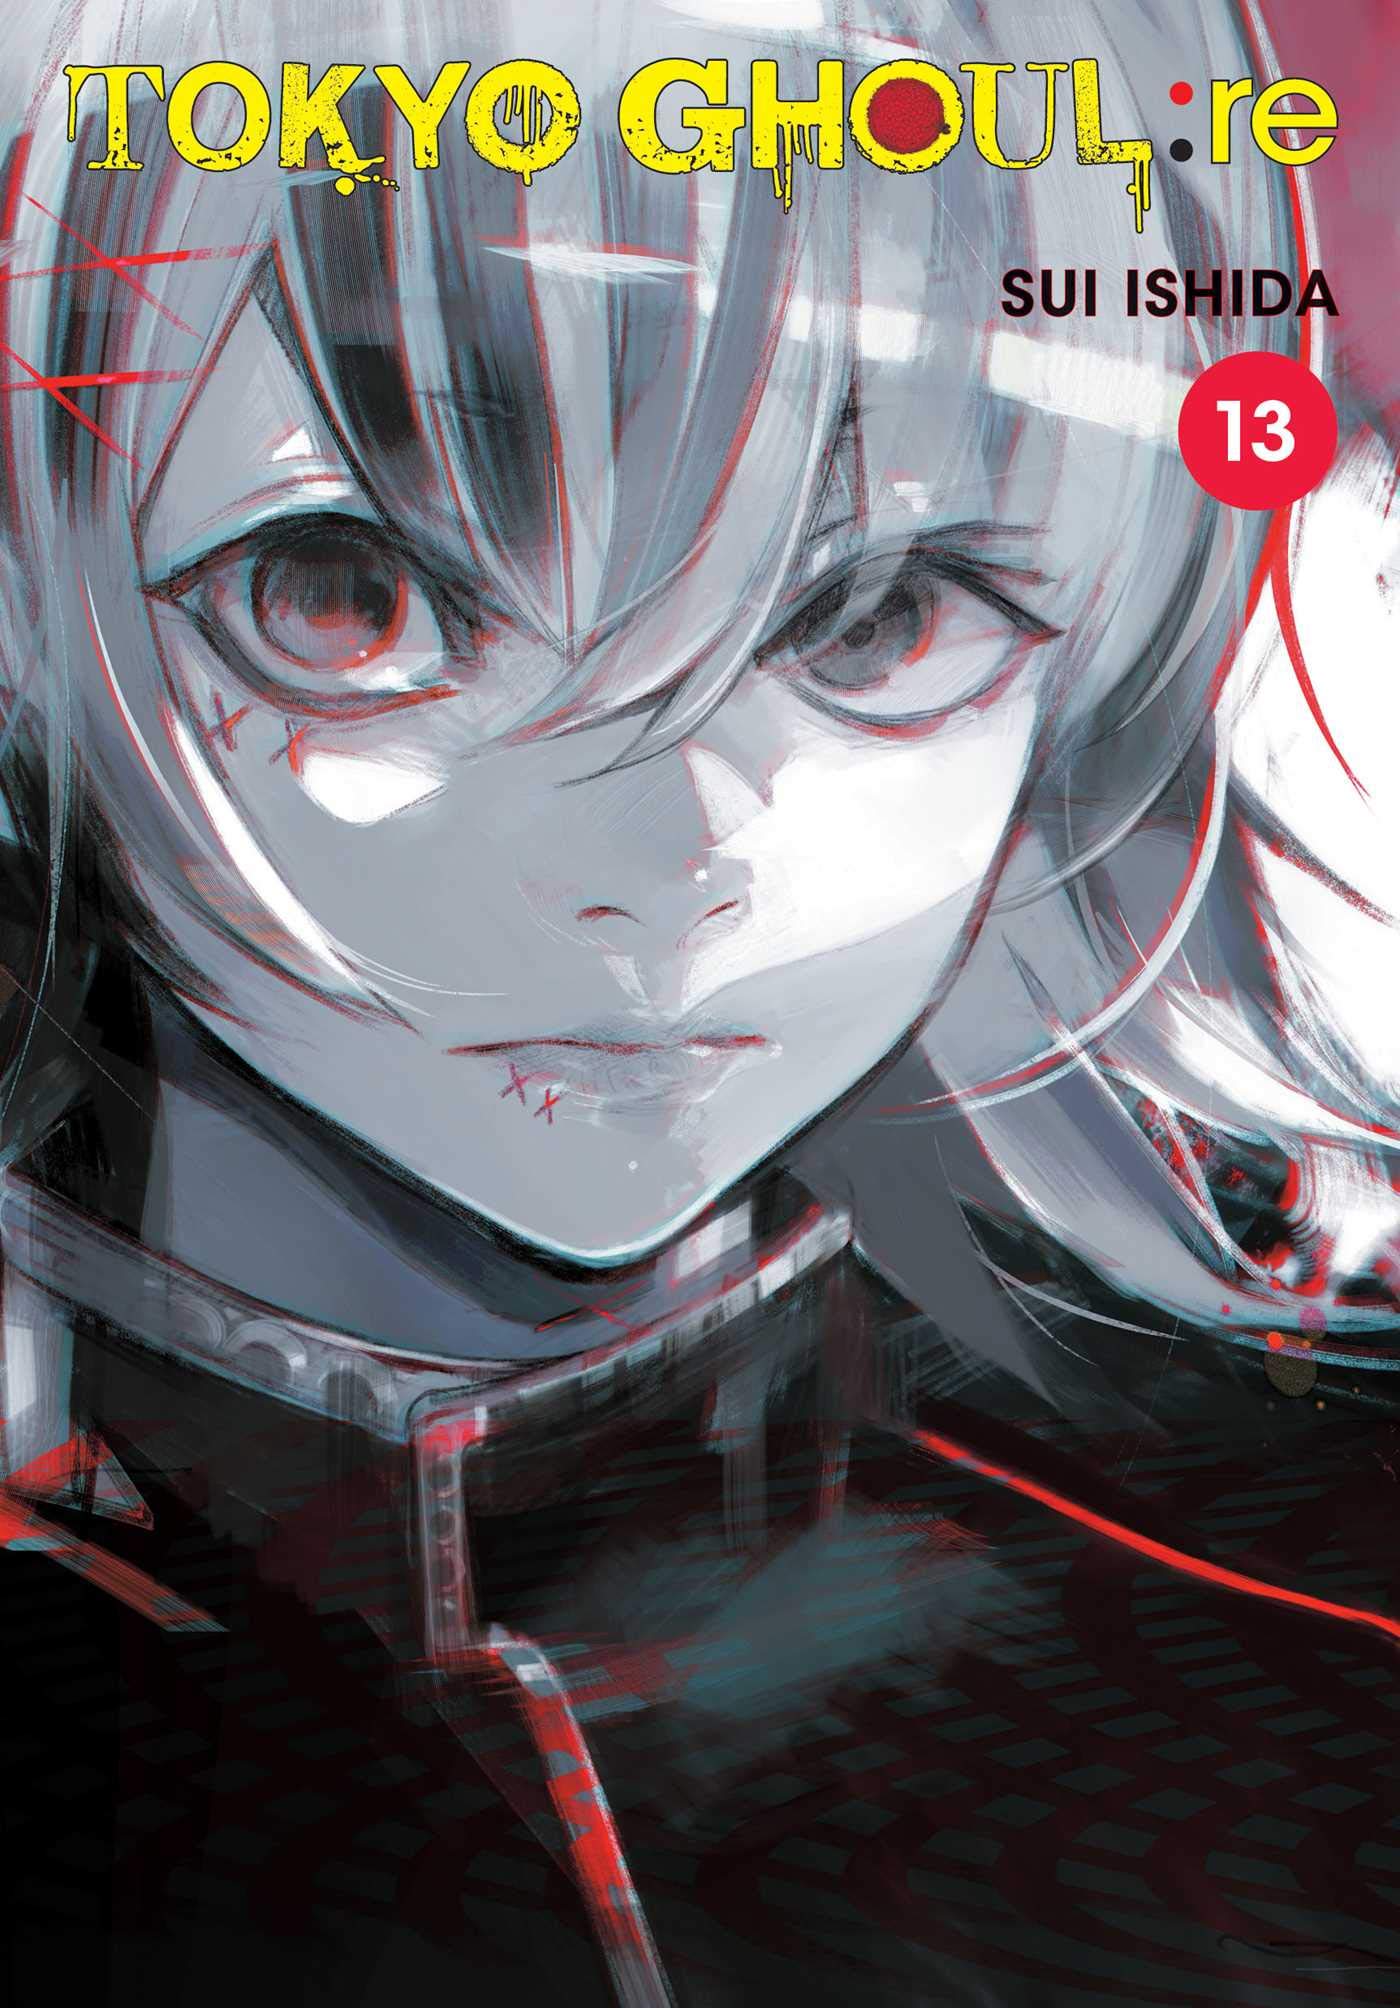 Mua Tokyo Ghoul: re 13: Volume 13 trên Amazon Anh chính hãng 2023 |  Giaonhan247